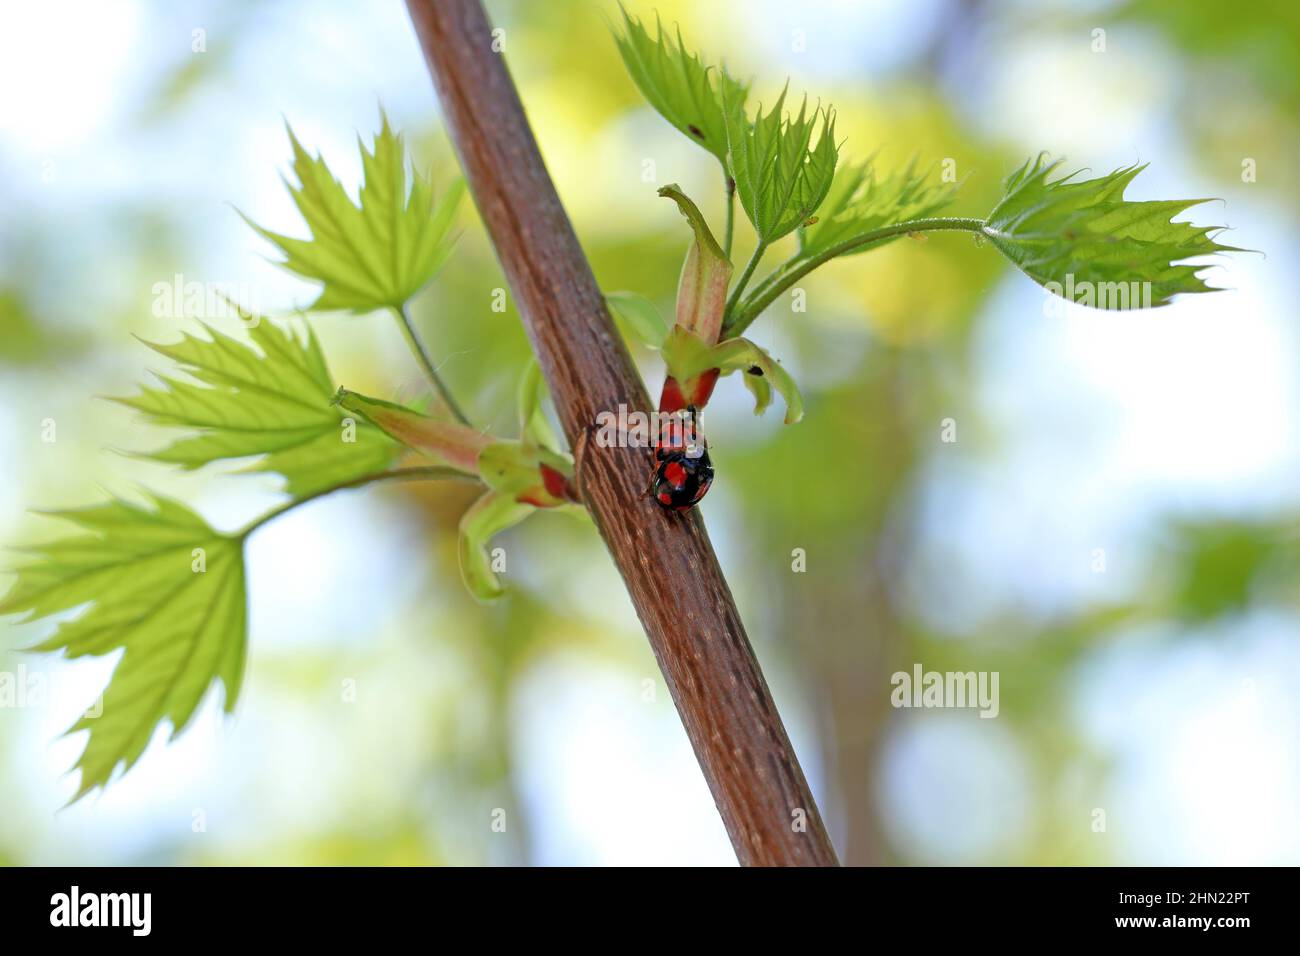 Eine Nahaufnahme des bunten asiatischen Marienkäfer (Harmonia axyridis) auf grünen Pflanzen. Stockfoto